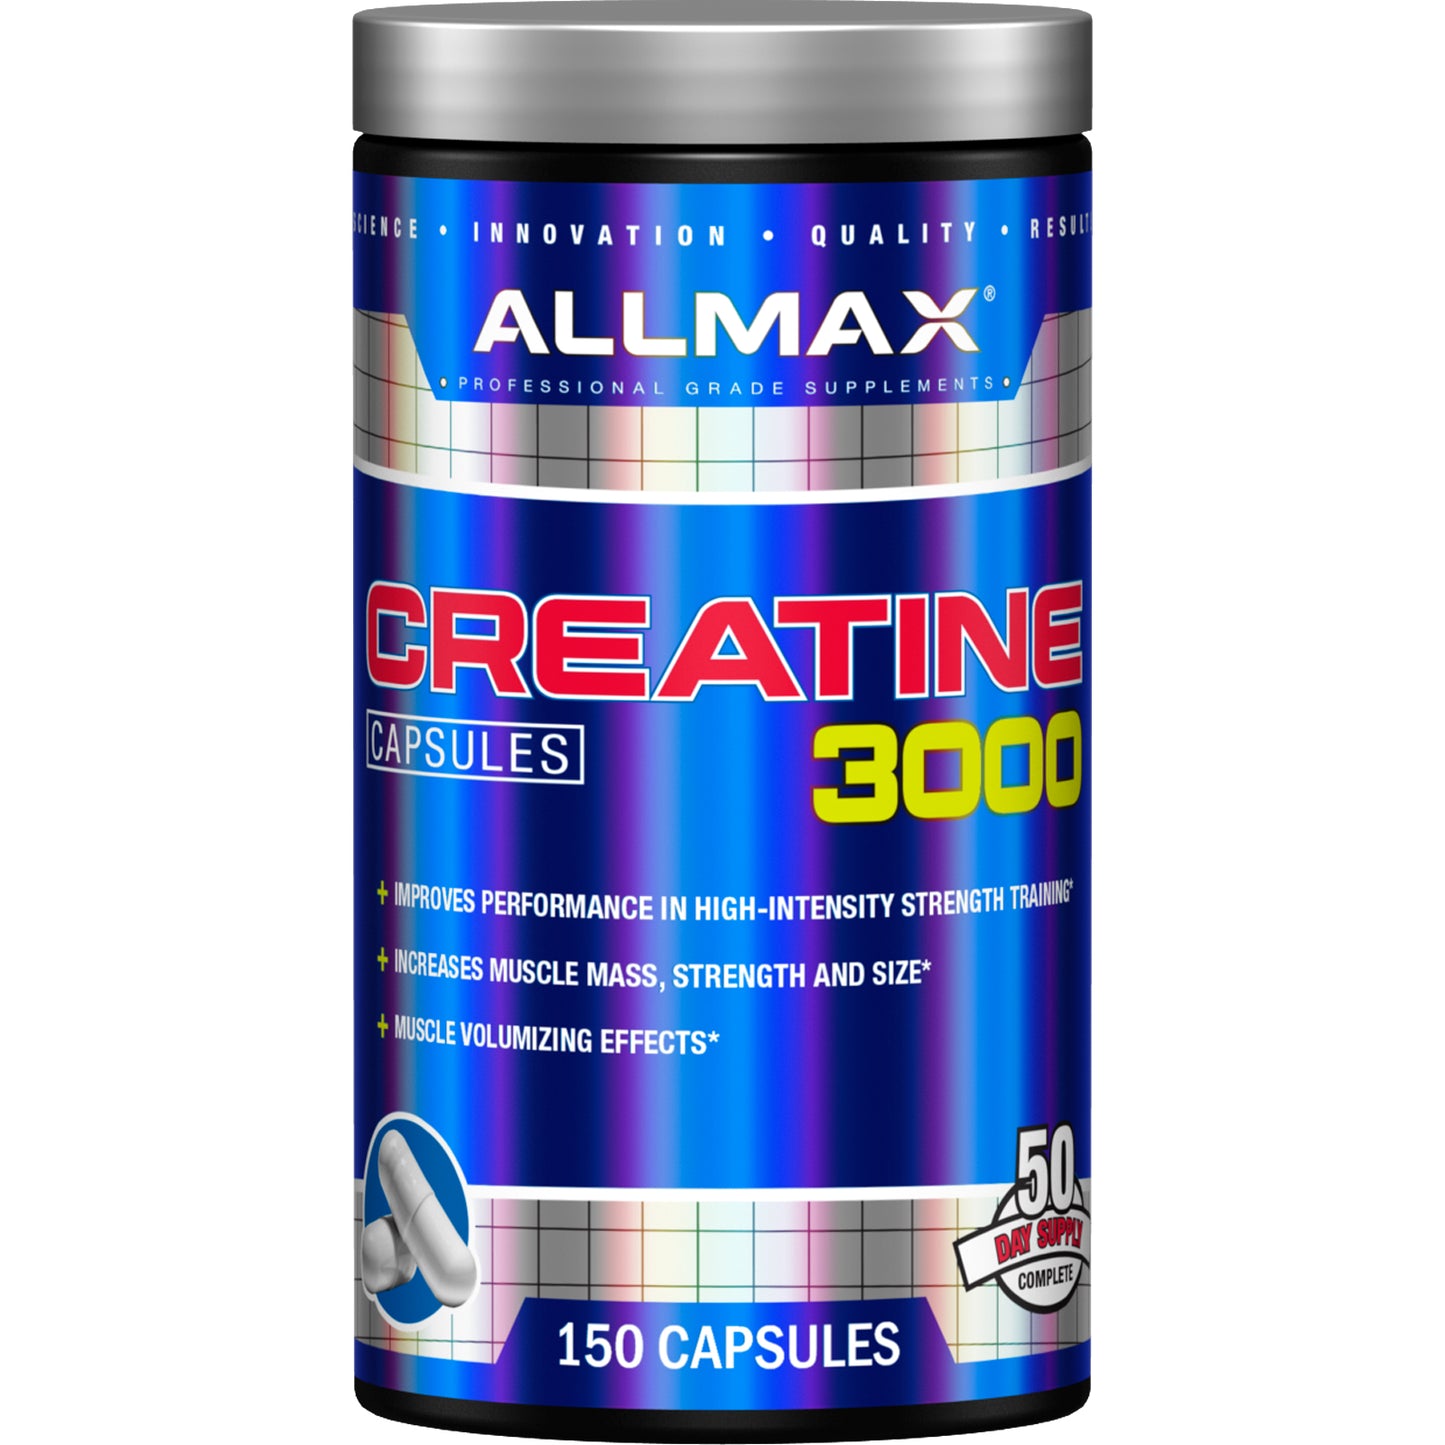 Nutrição Allmax, creatina 3000mg, 150 cápsulas